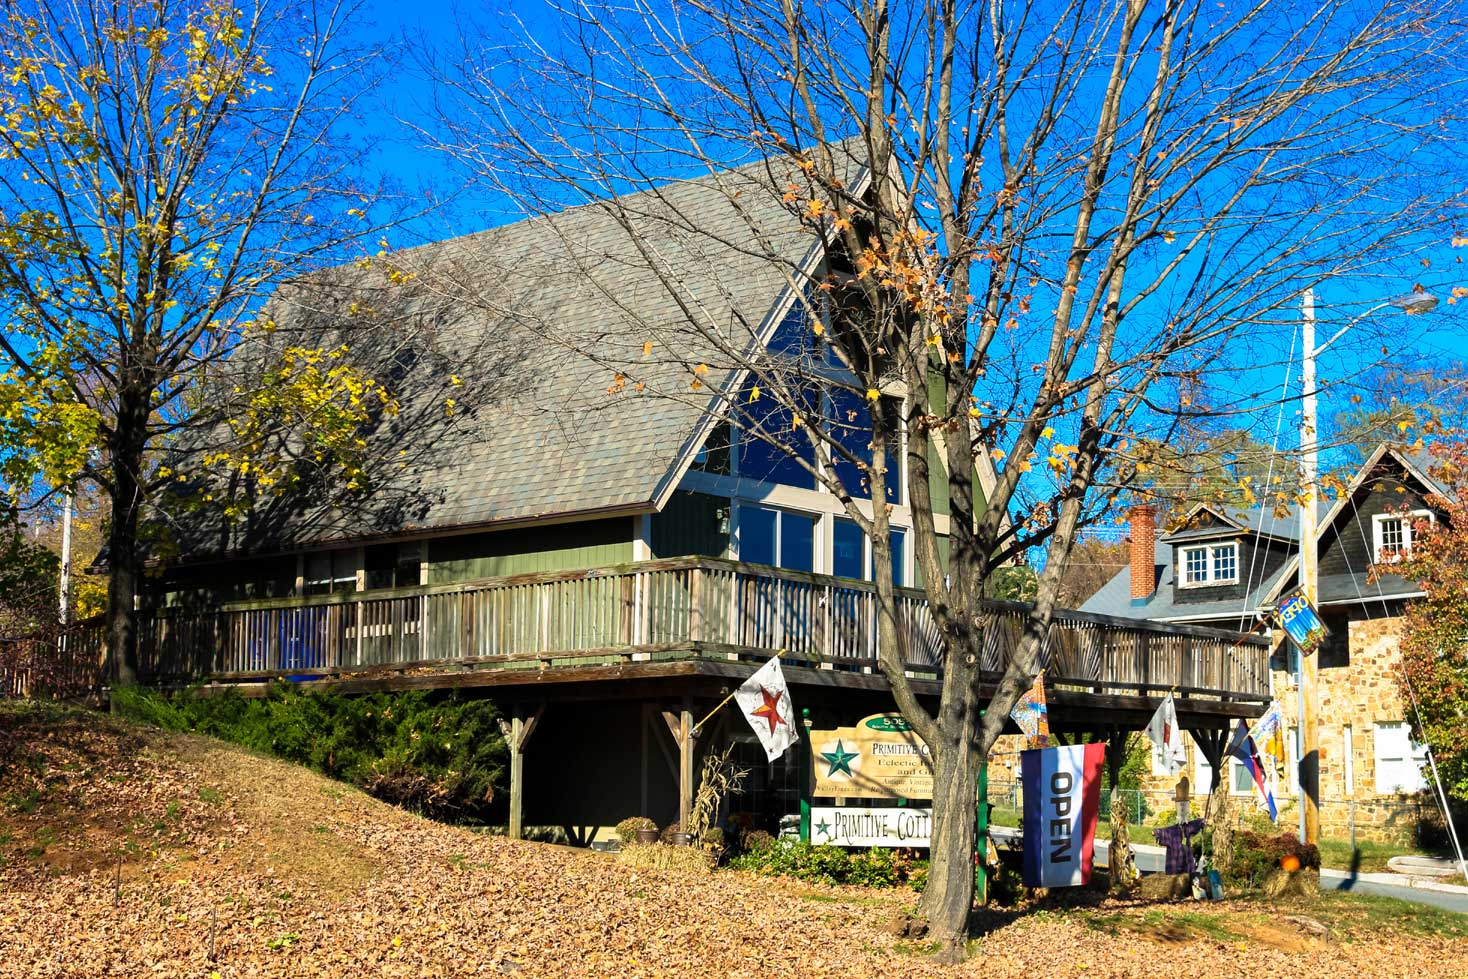 Primitive Cottage in Front Royal, VA